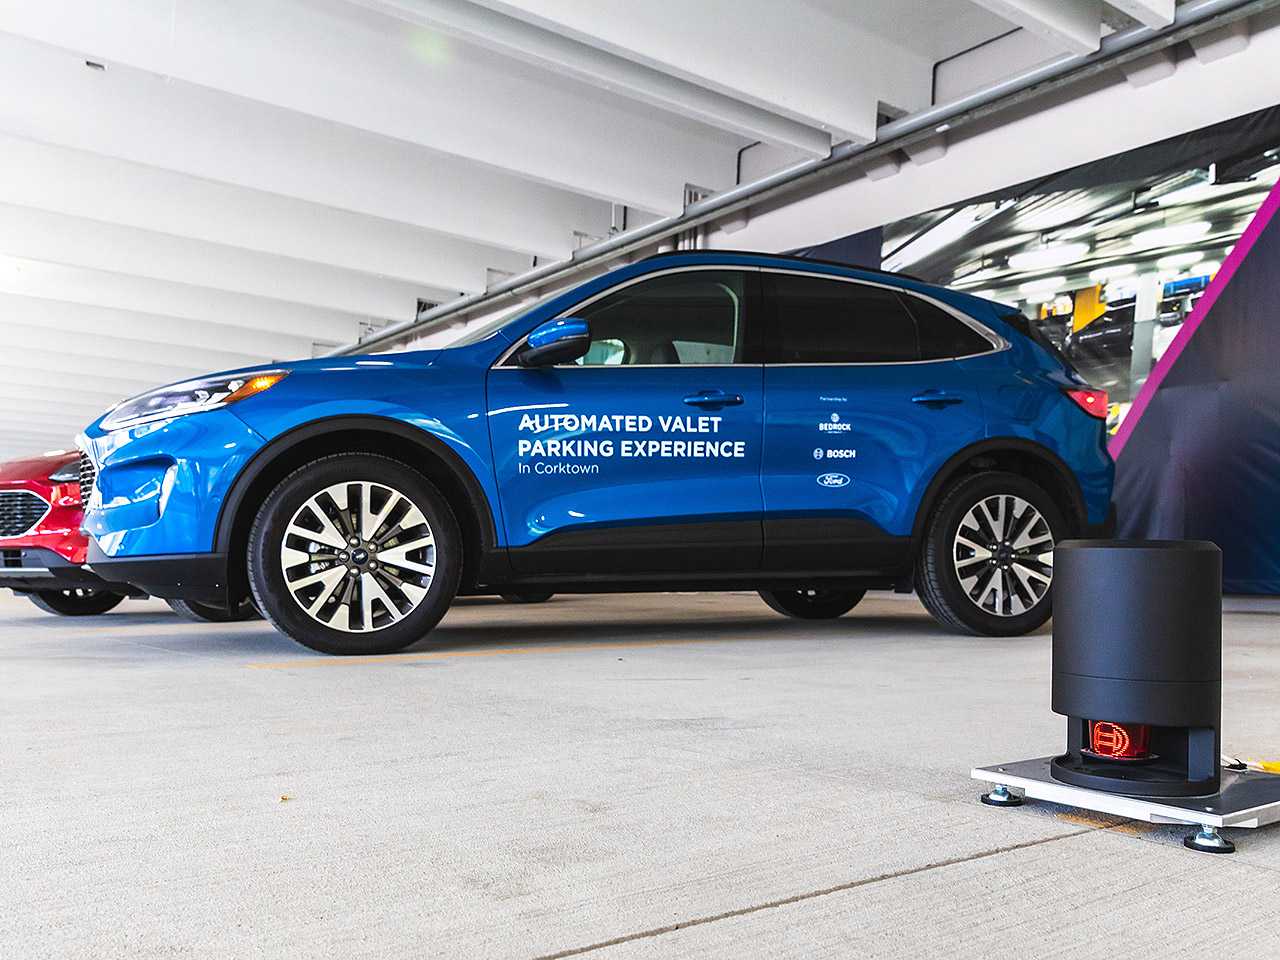 Tecnologia do estacionamento automatizado em testes pela Ford nos EUA